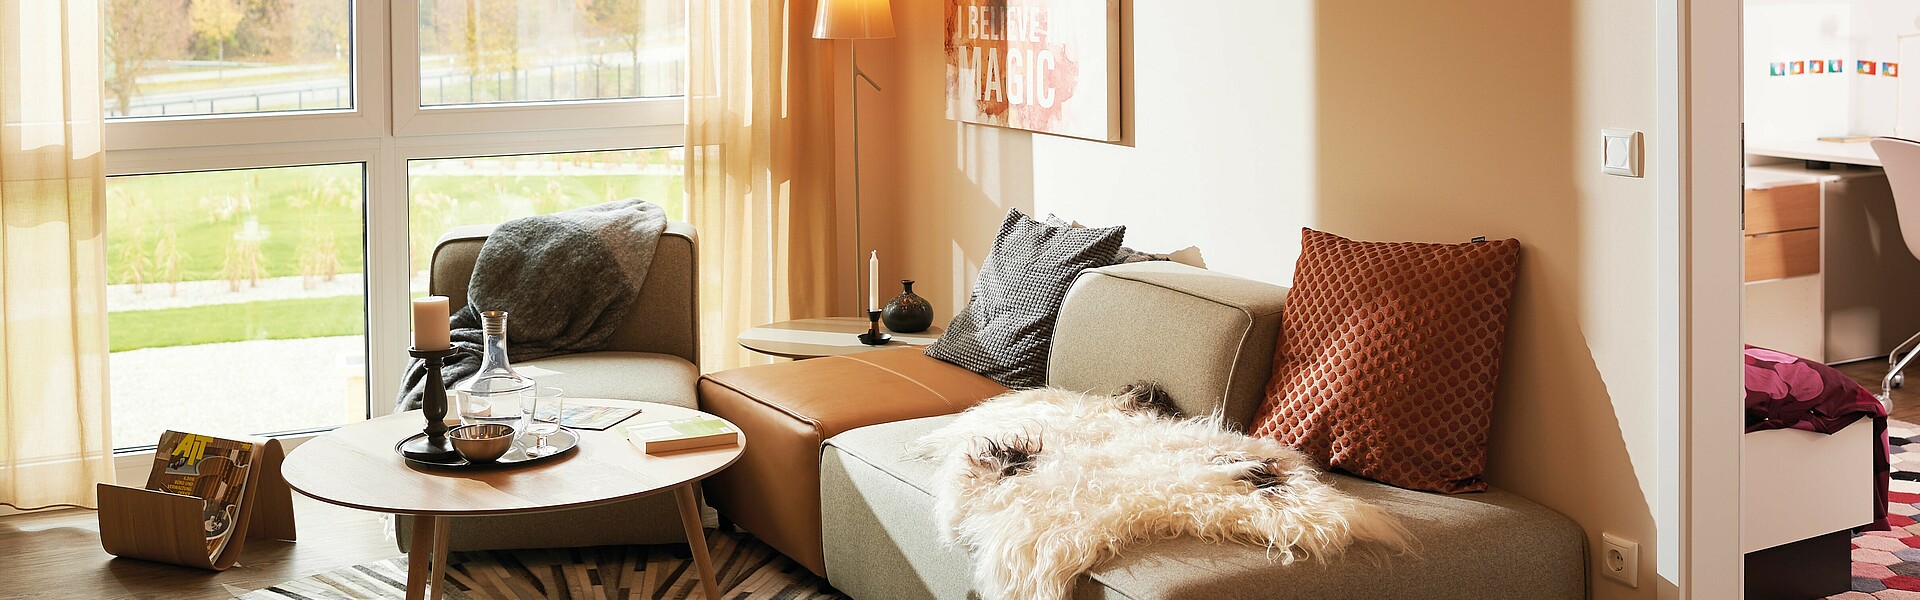 Wohnzimmer mit Couch in einem Fertighaus von Hanse Haus